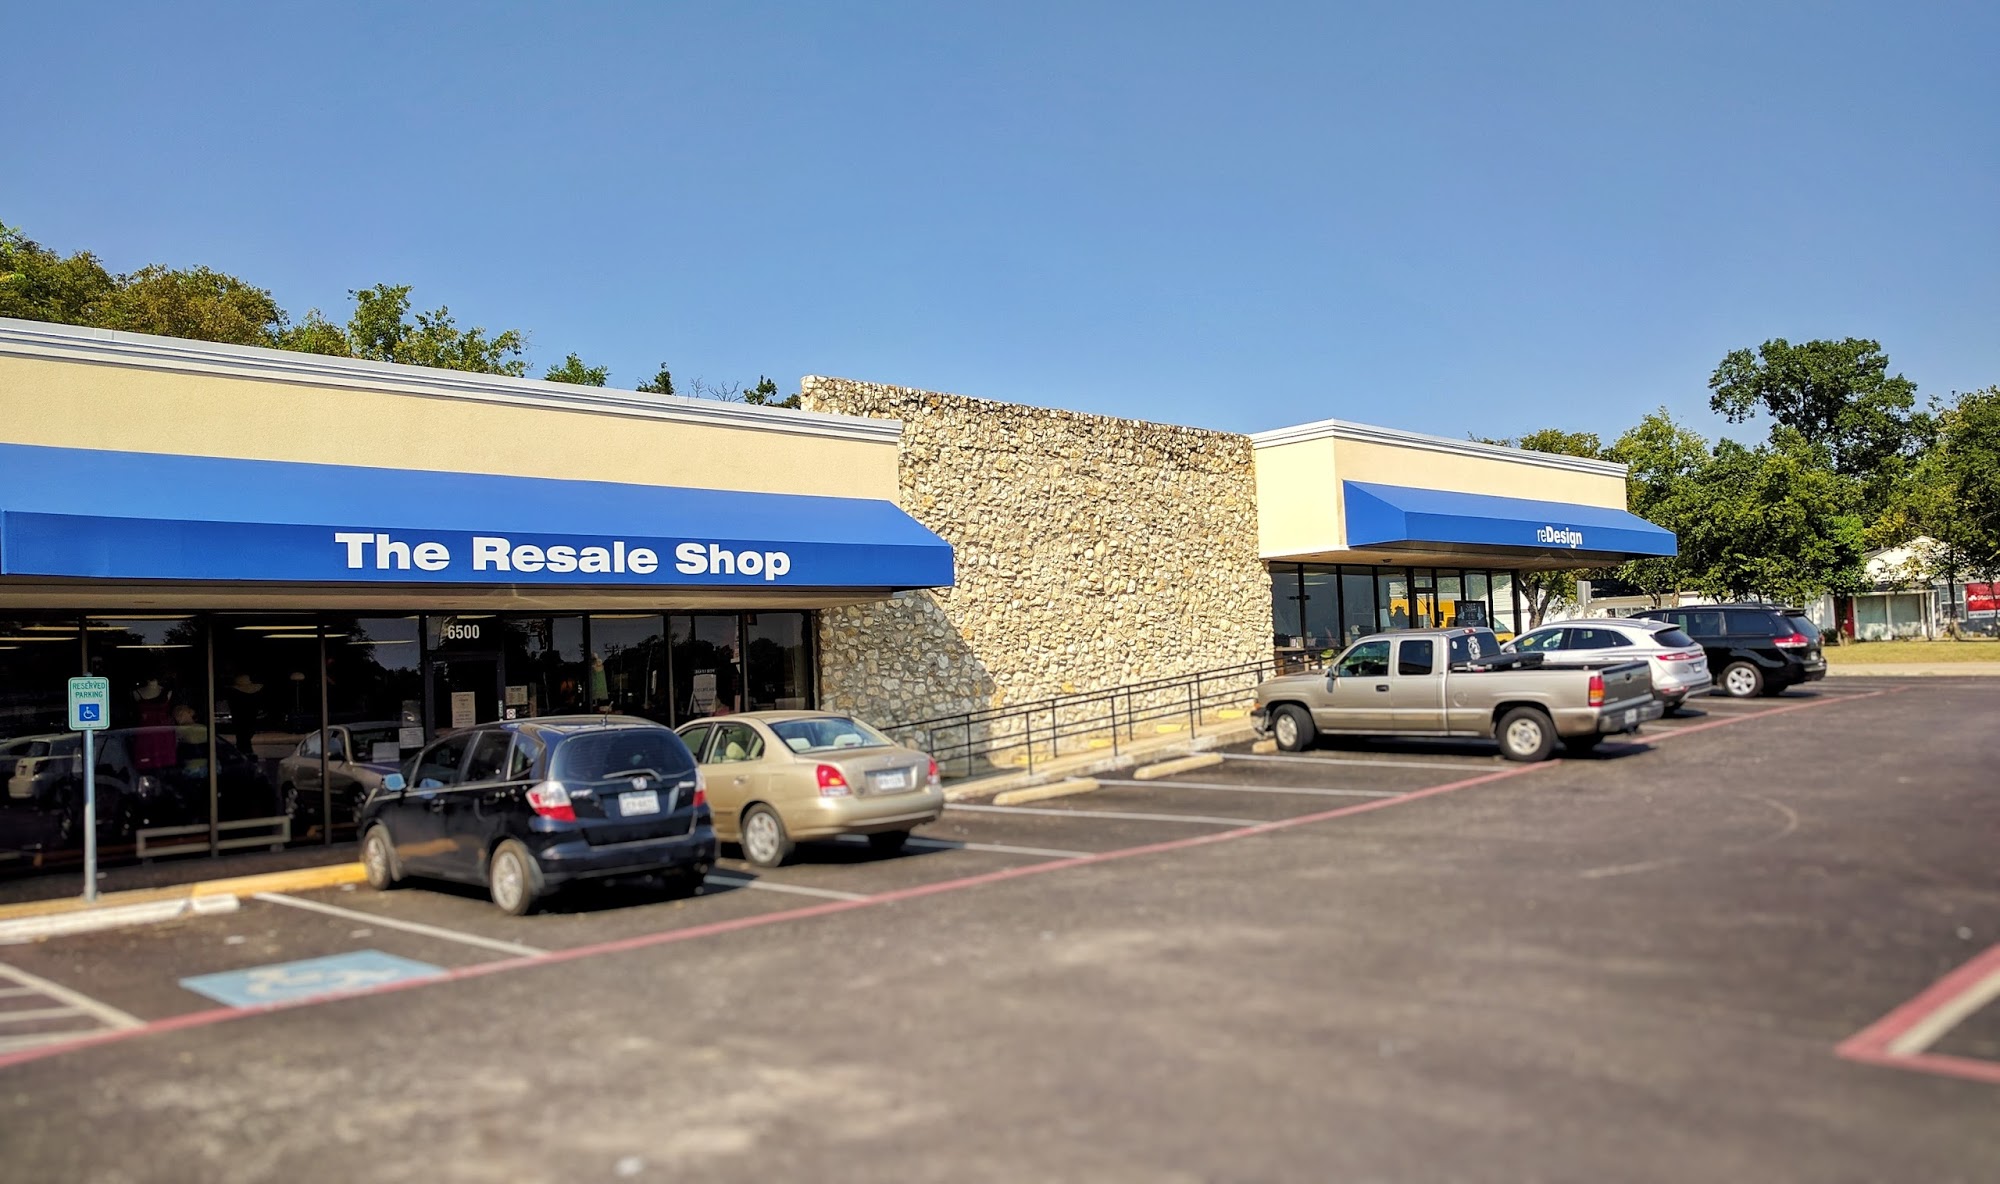 The Resale Shop